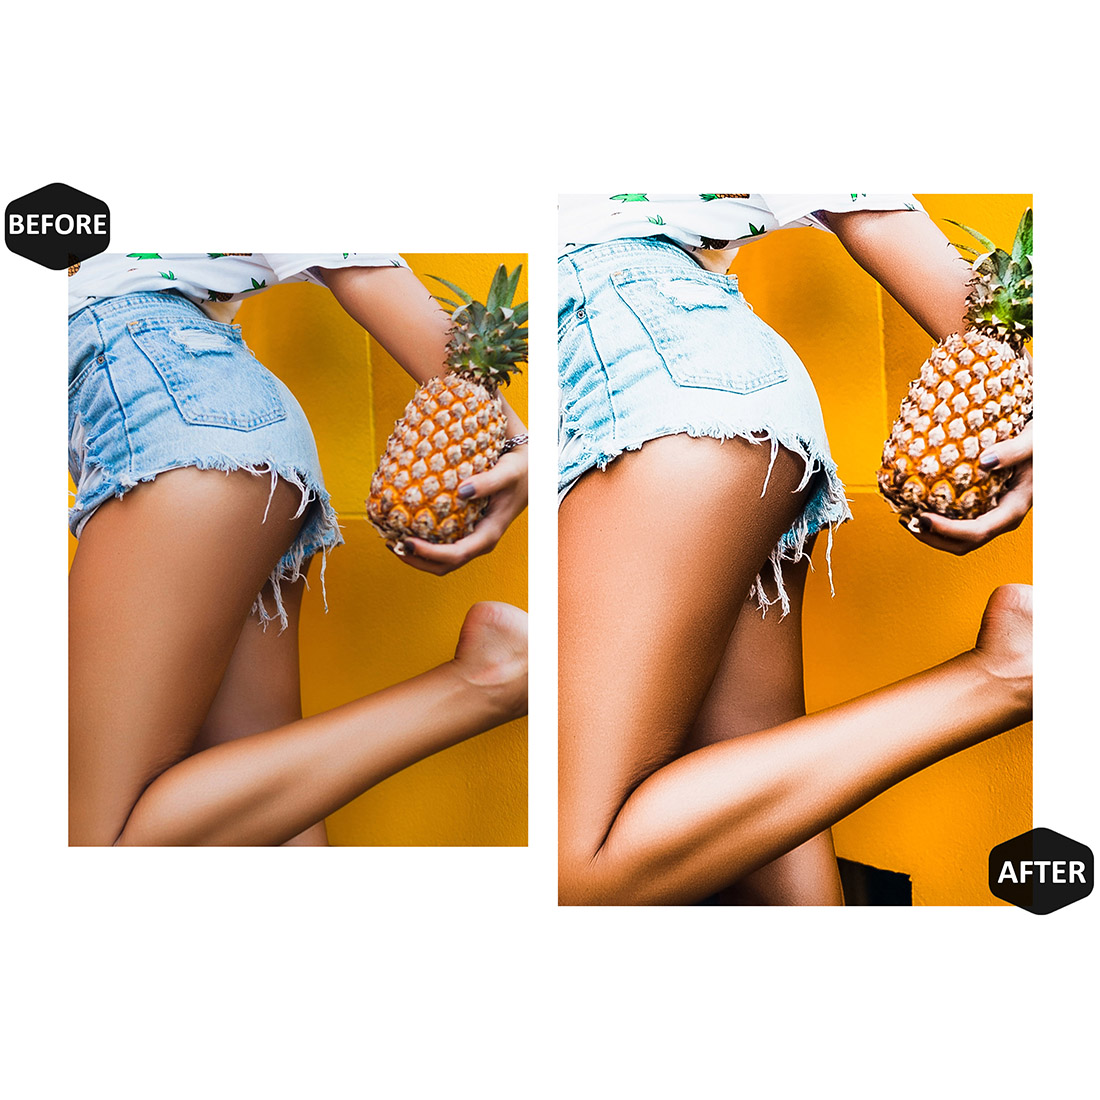 12 Hot & Vibrant Lightroom Presets, Colorful Mobile Preset, Natural Desktop LR Lifestyle DNG Instagram Vivid Filter Theme Portrait Summer preview image.